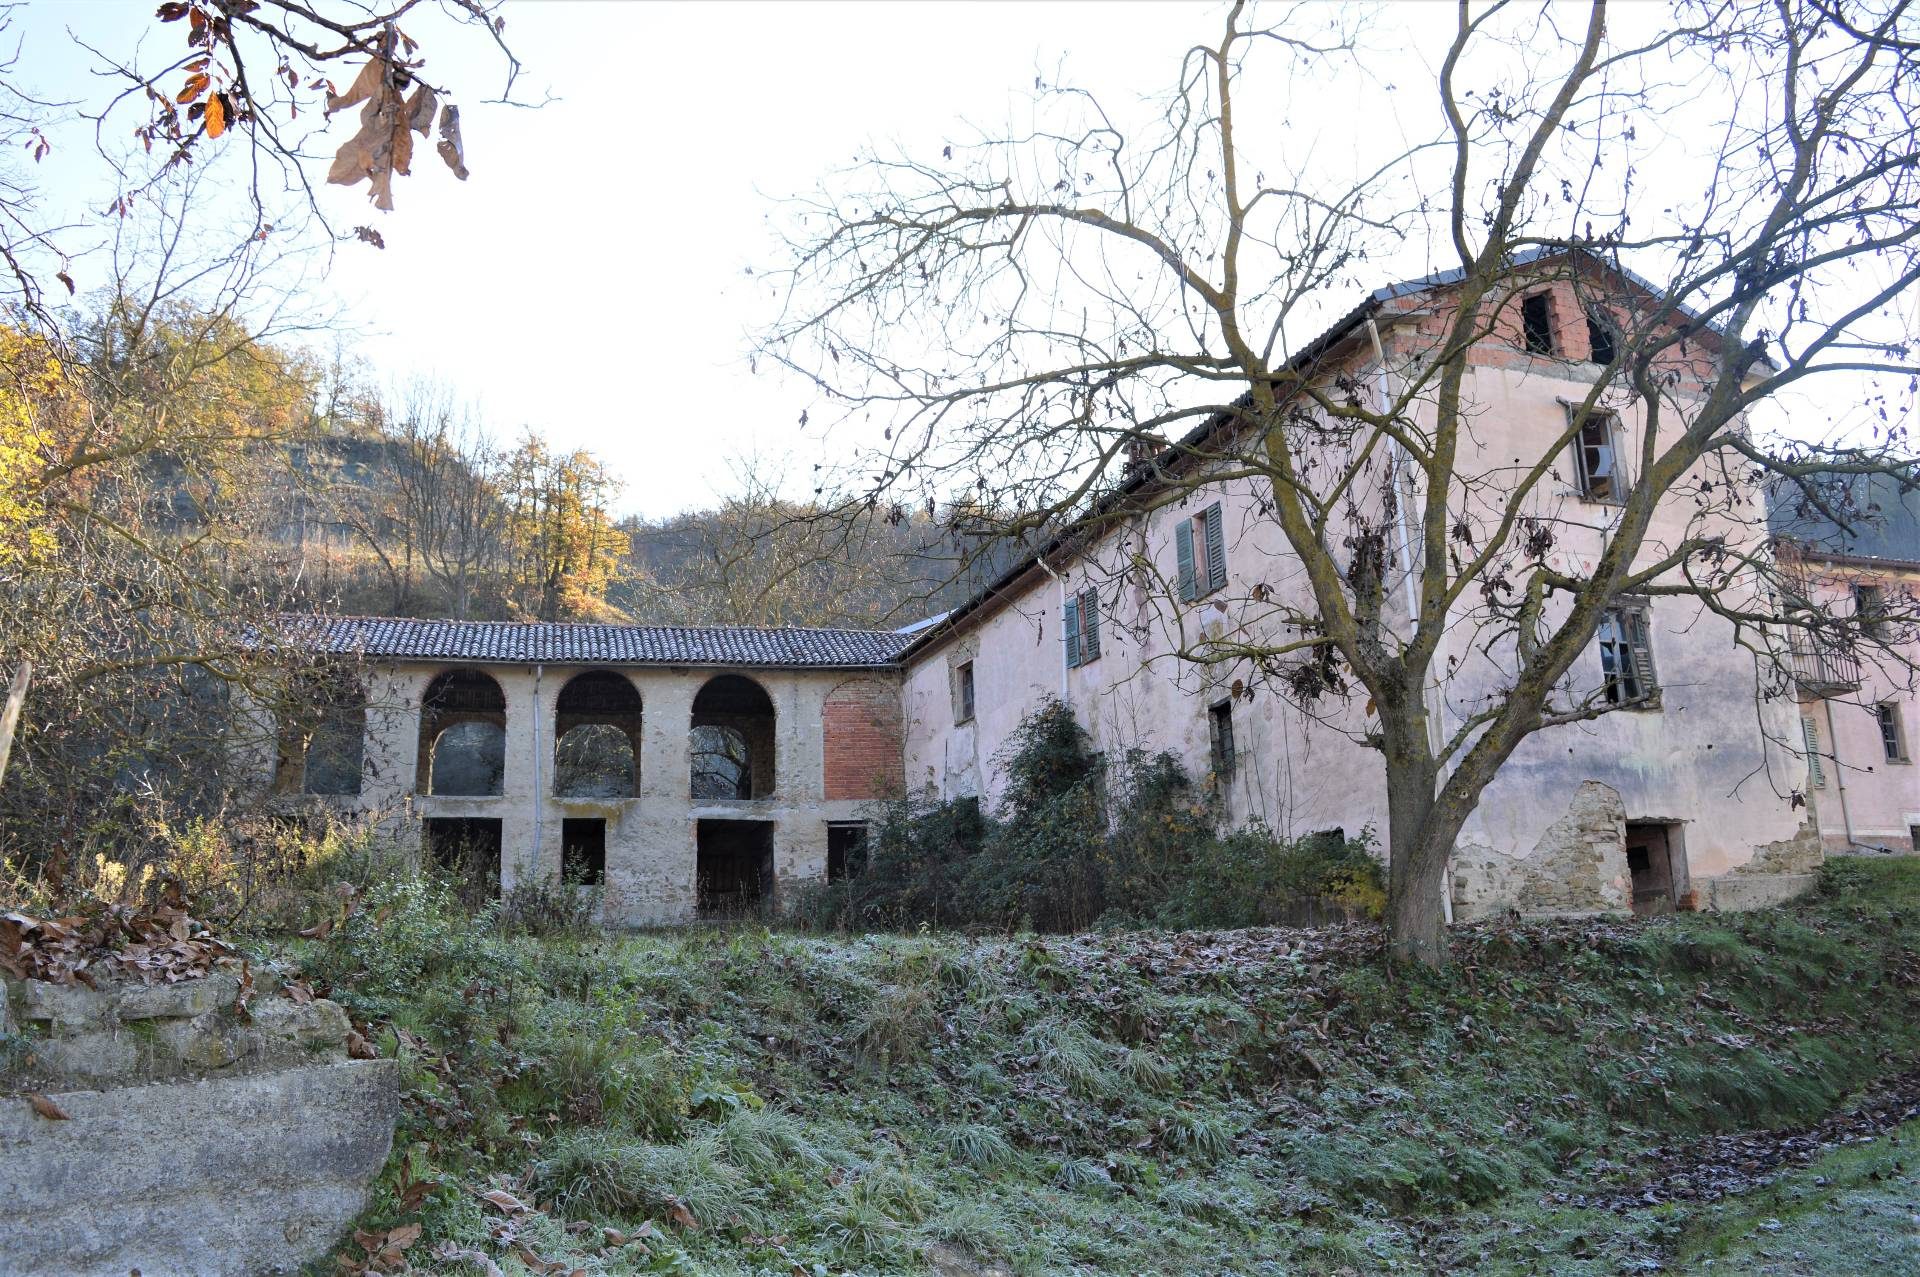 Rustico / Casale in vendita a Spigno Monferrato, 12 locali, prezzo € 55.000 | PortaleAgenzieImmobiliari.it